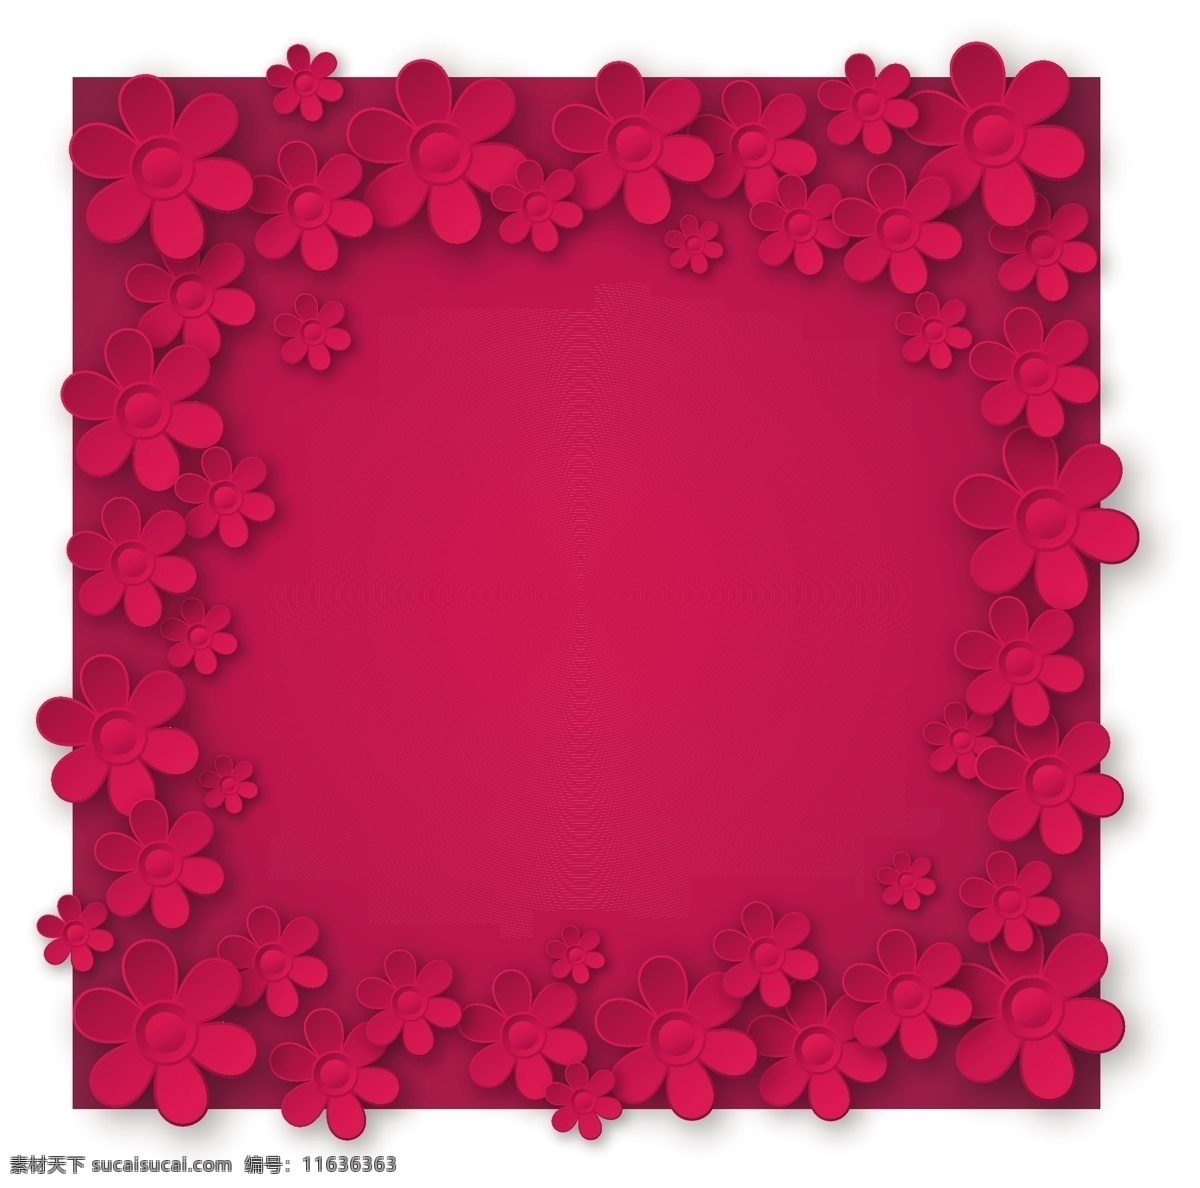 花框 花朵 枚红色花朵 清新花框 玫红色背景 红色背景 平时积累素材 底纹边框 花边花纹